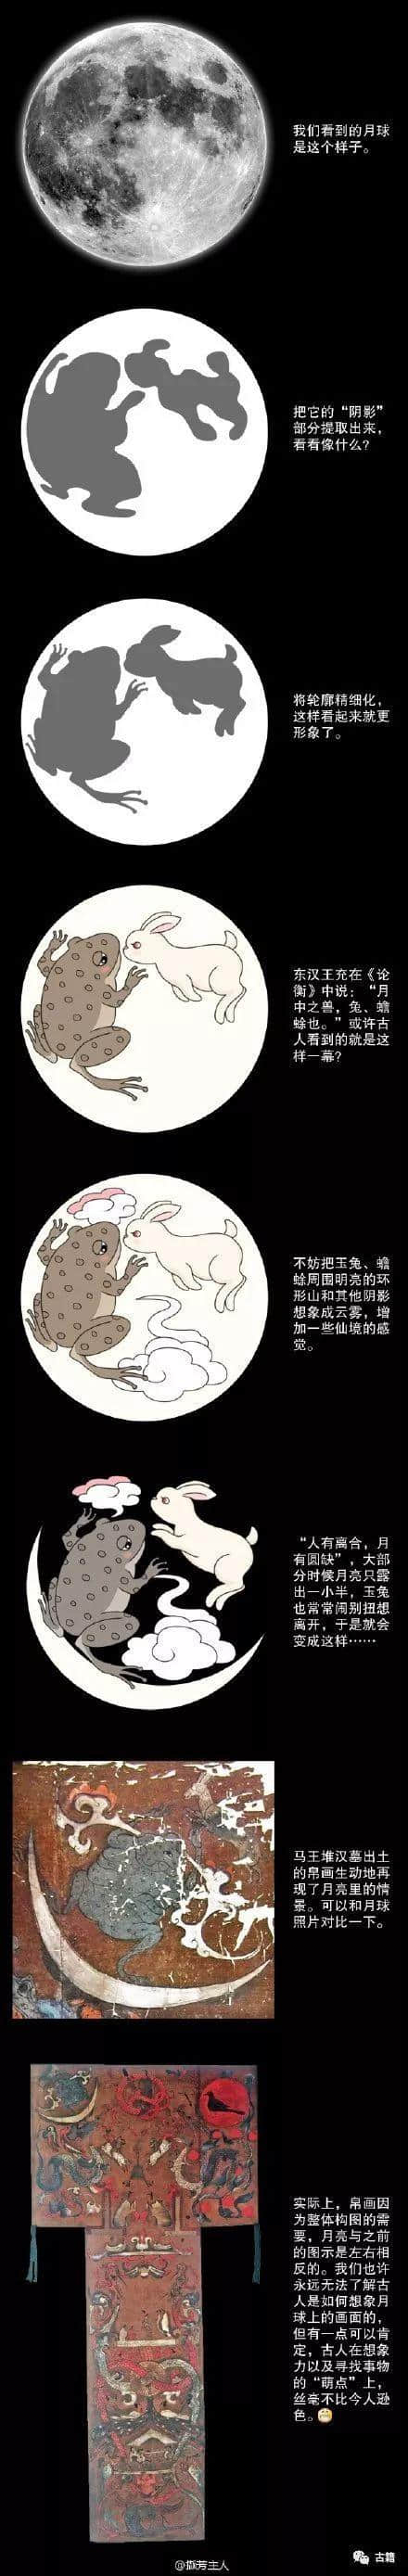 中国古代典籍中的月宫传说